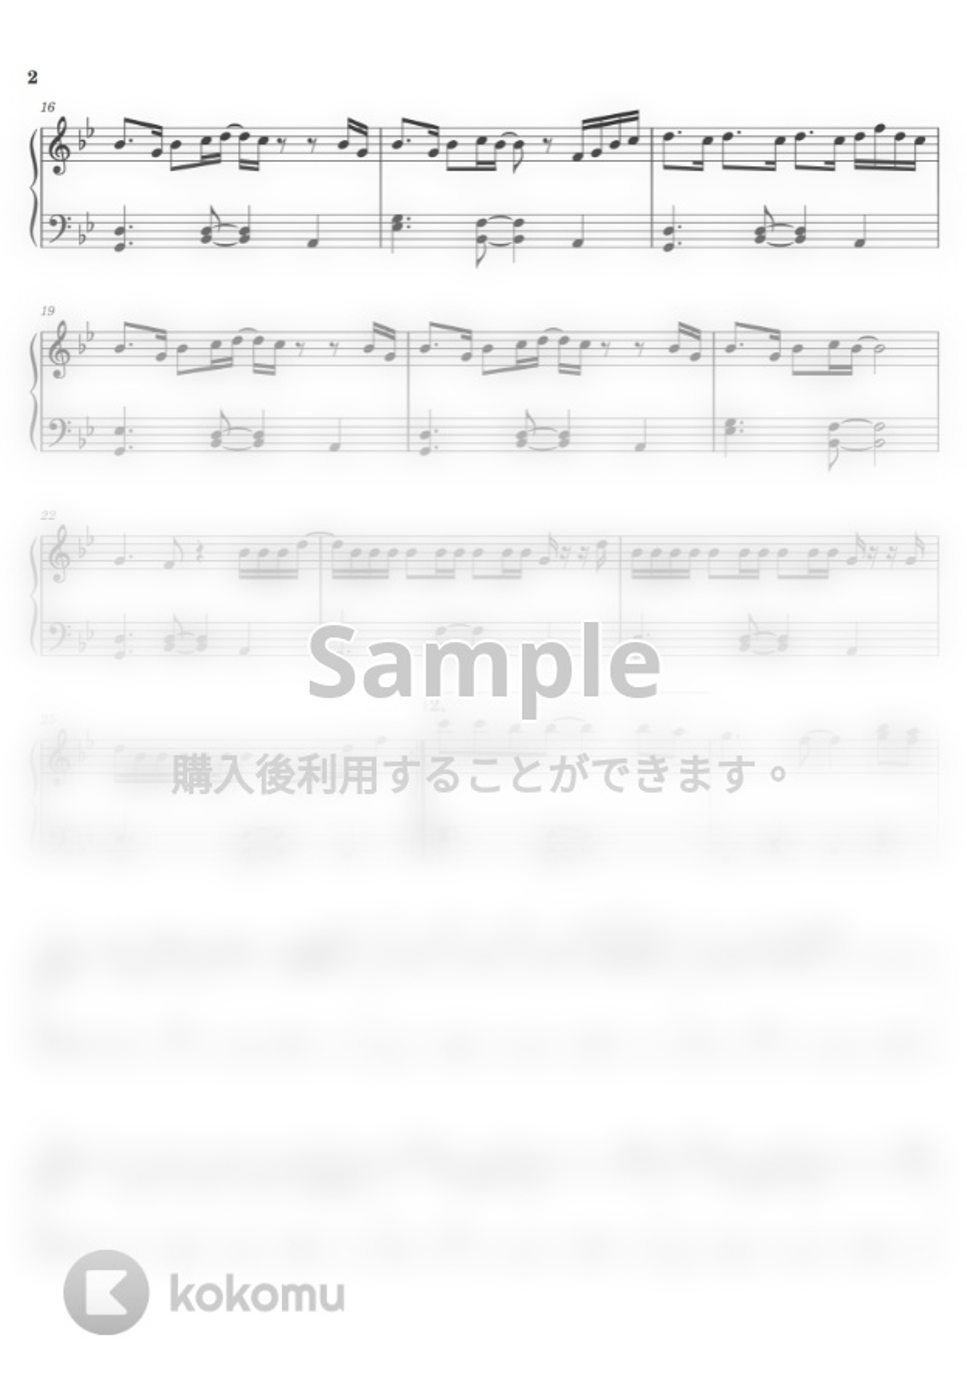 ウィズ・カリファ - See You Again (ピアノ初中級ソロ) by pianon